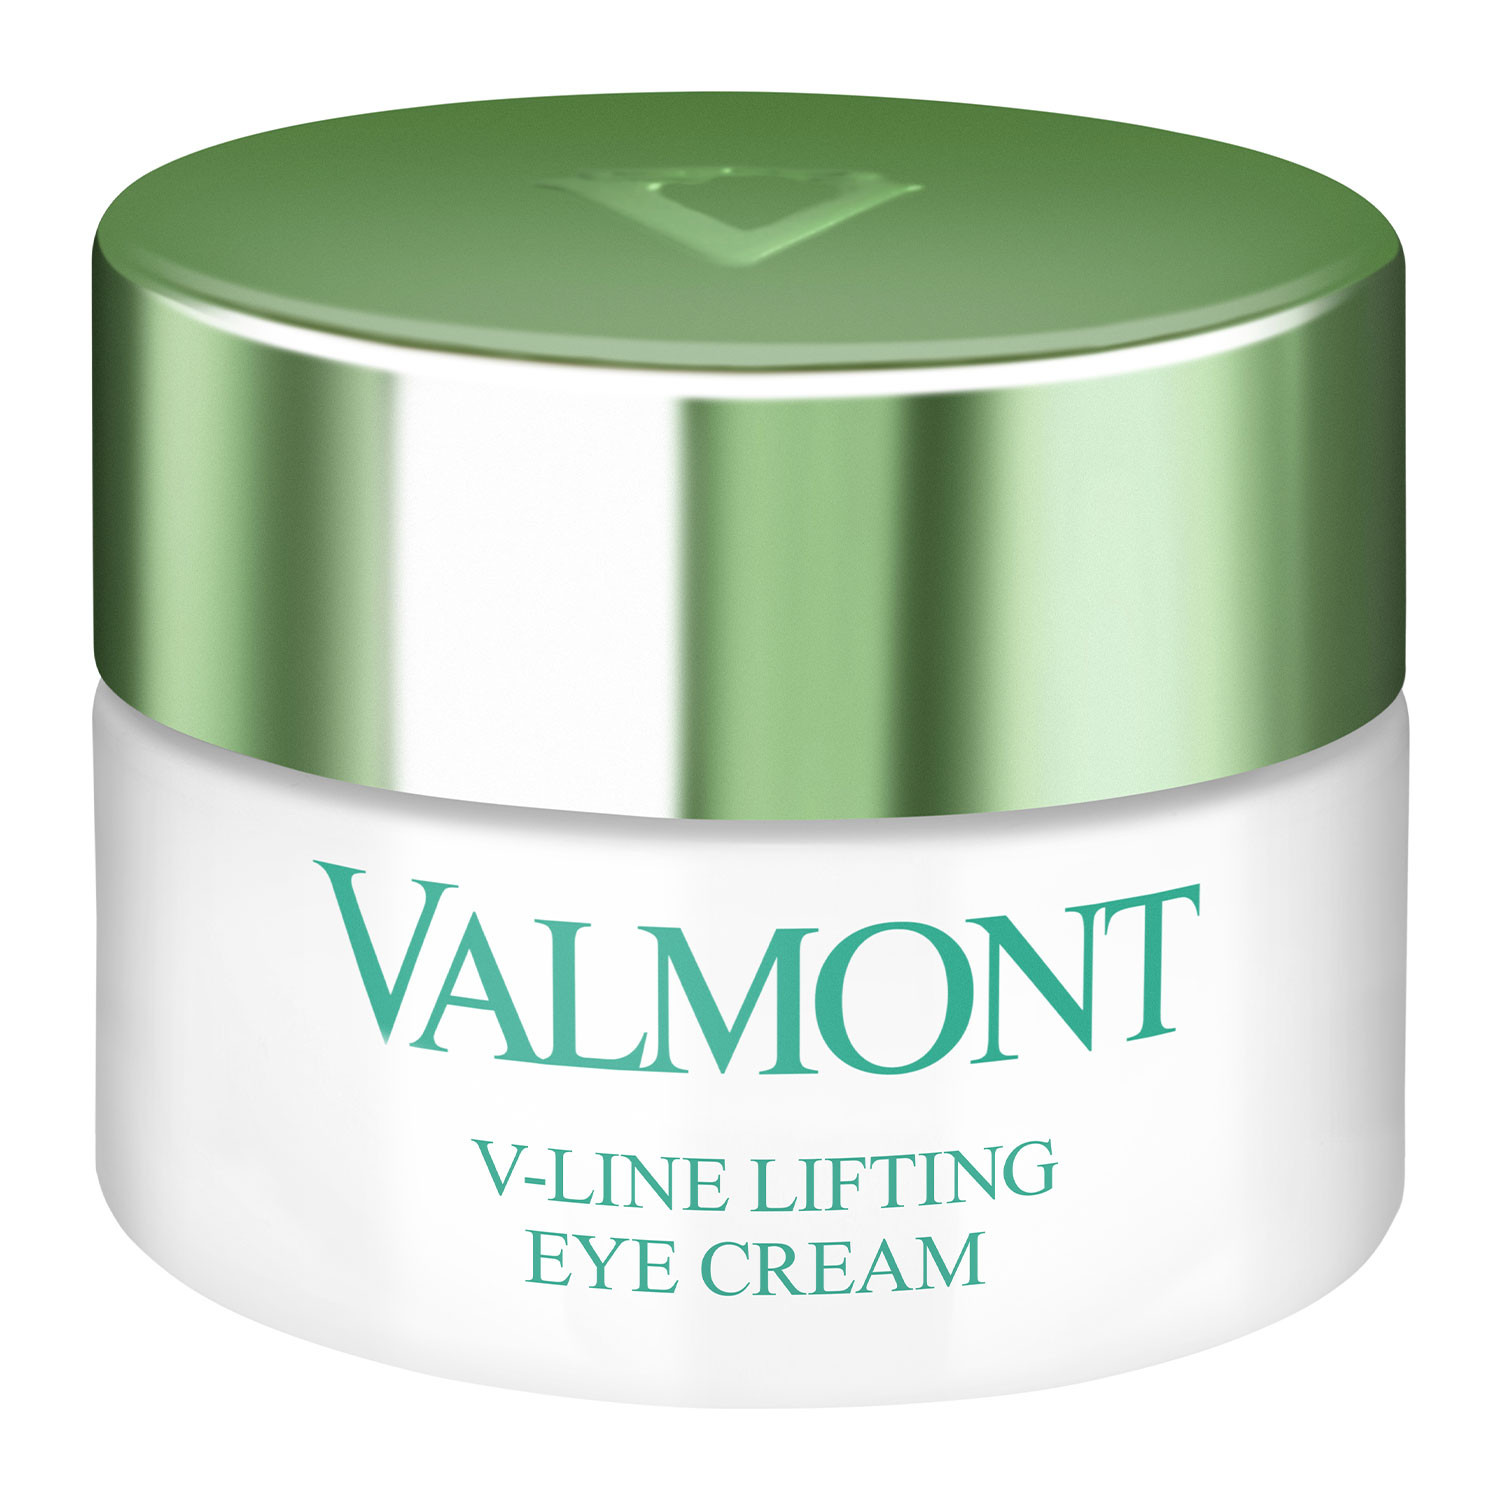 Відгуки про Valmont V-Line Lifting Eye Cream Лифтинг-крем для кожи вокруг глаз